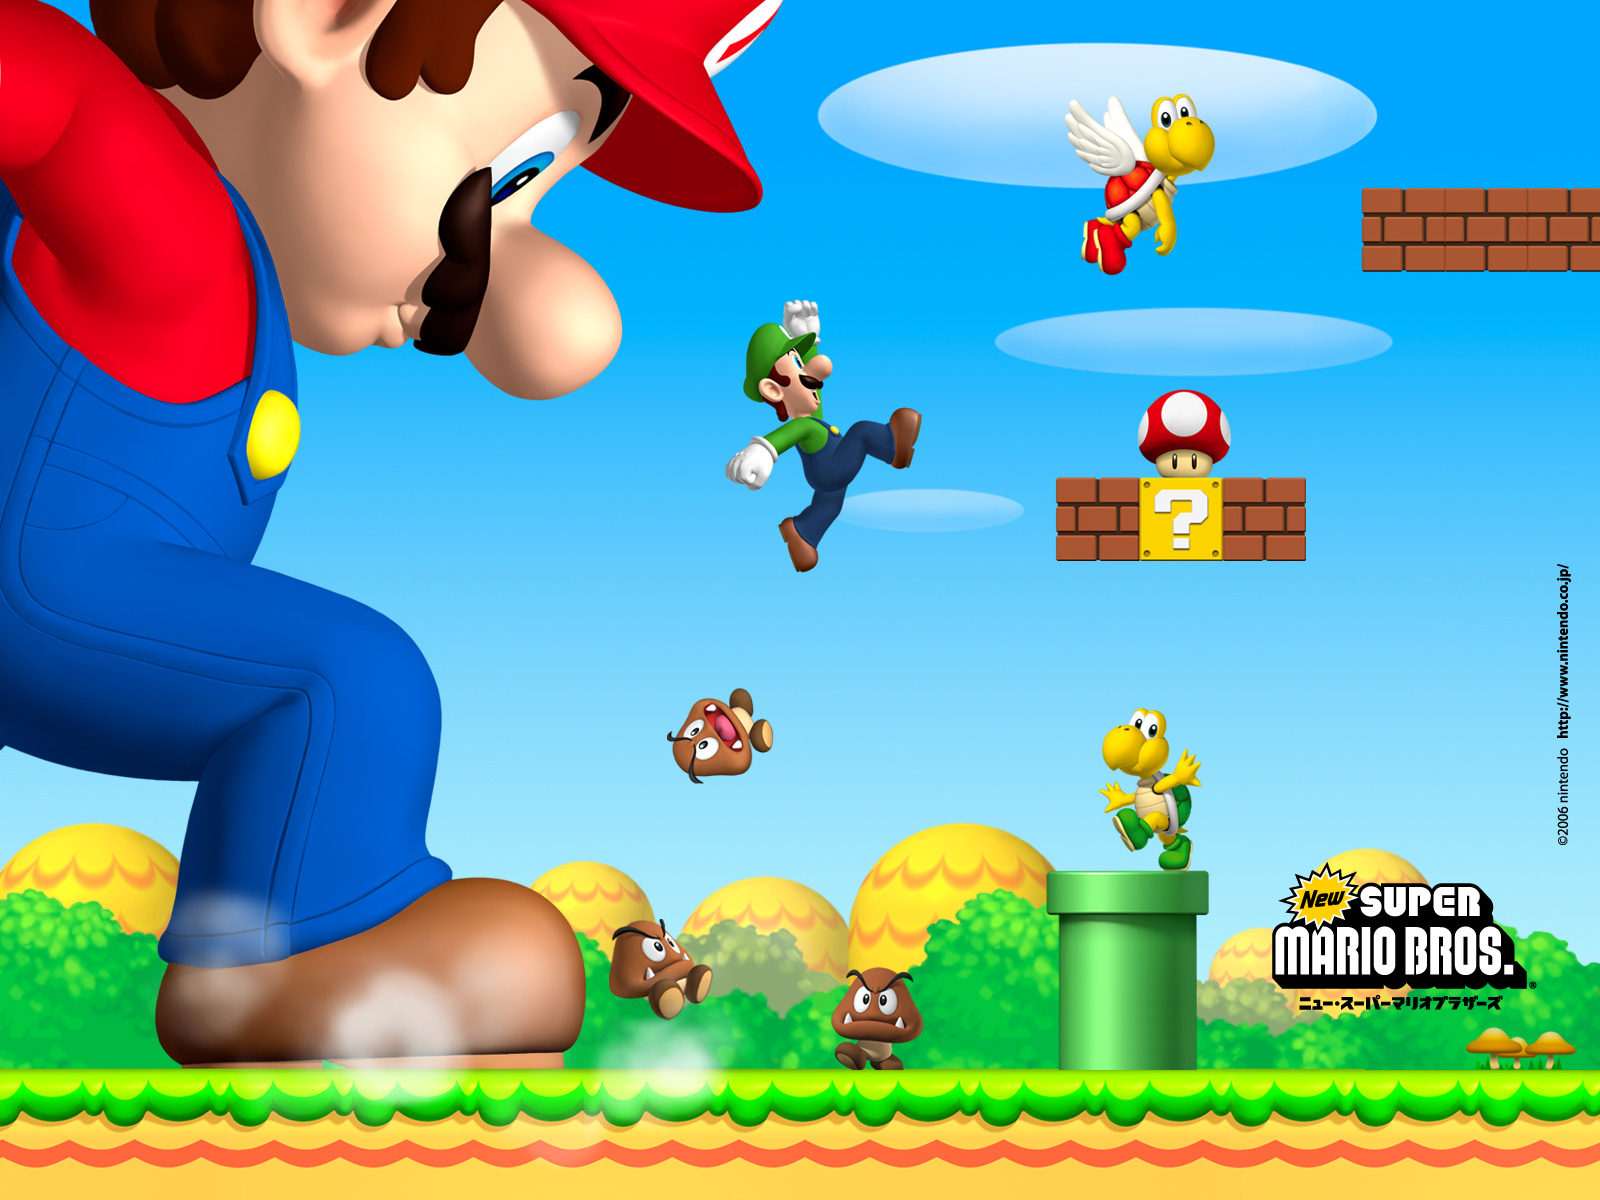 Mario bros 5. New super Mario Bros. Игра. Игра Марио супер Марио БРОС. Супер Марио БРОС Нинтендо. Игры New super Mario Bros u.